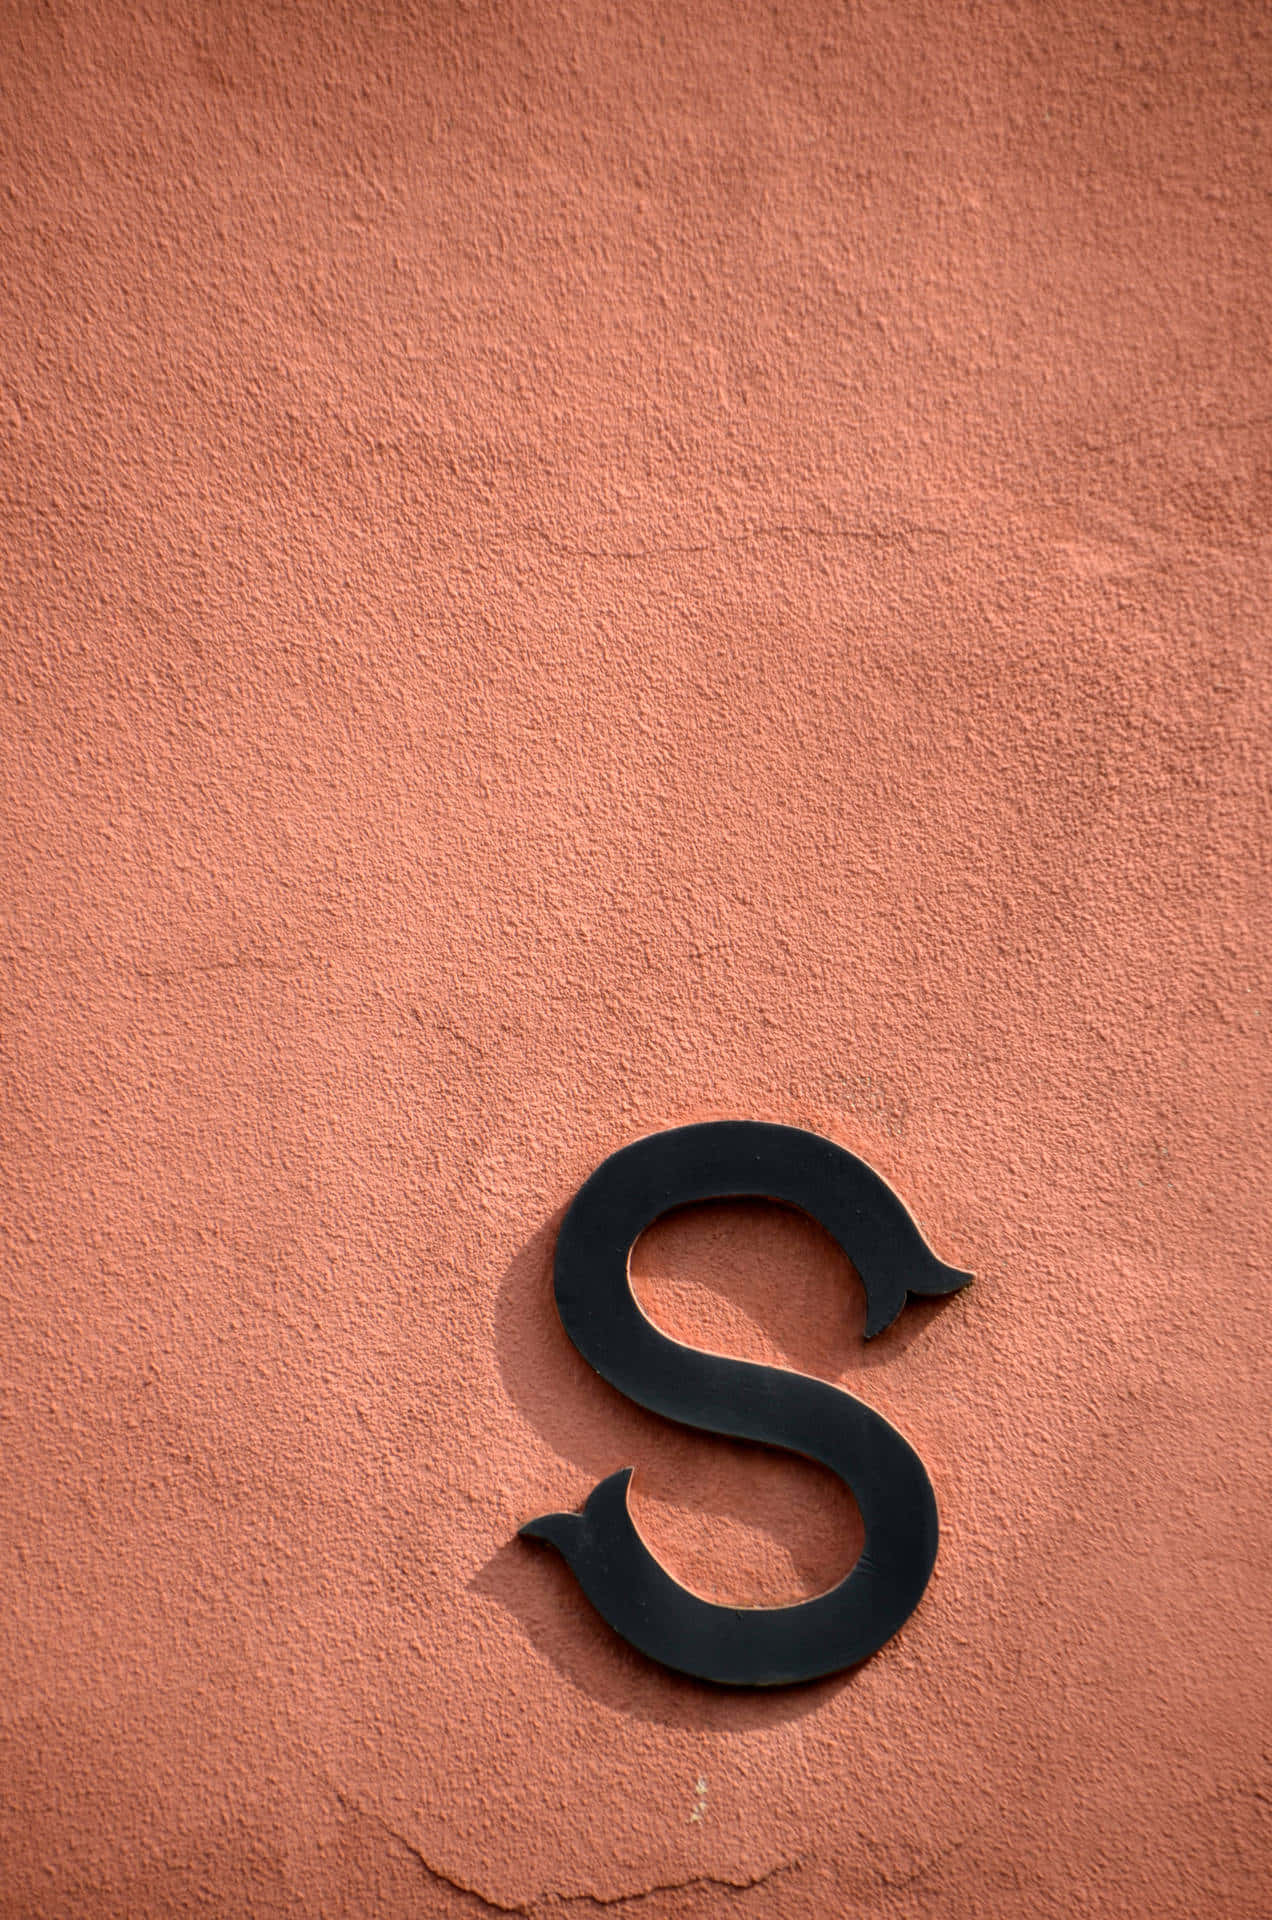 Minimalist Black S Letteron Red Wall.jpg Wallpaper